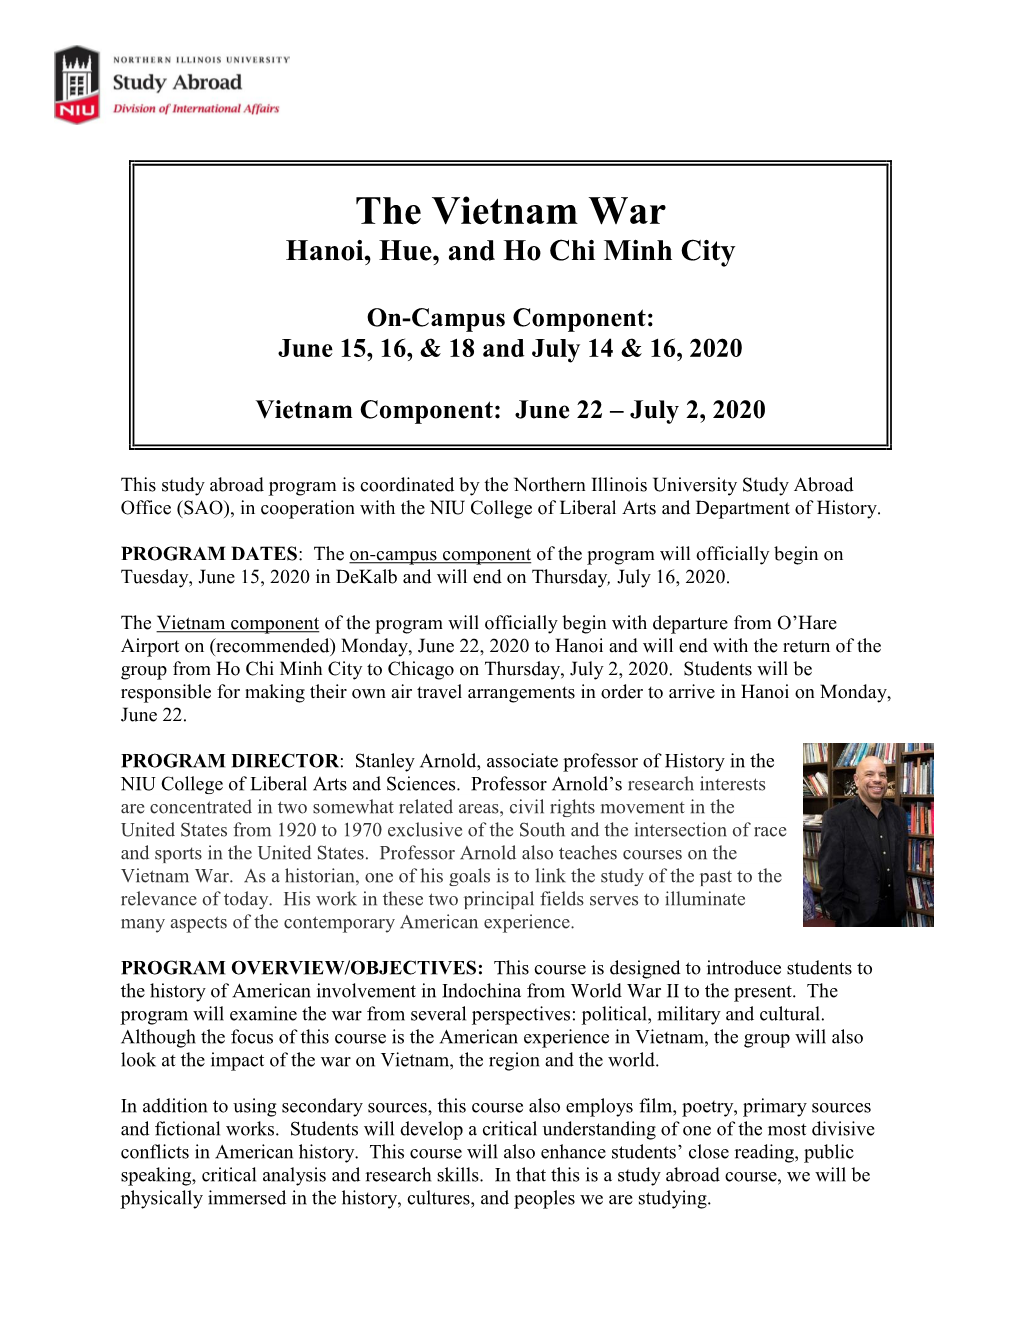 The Vietnam War Summer 2020.Pdf